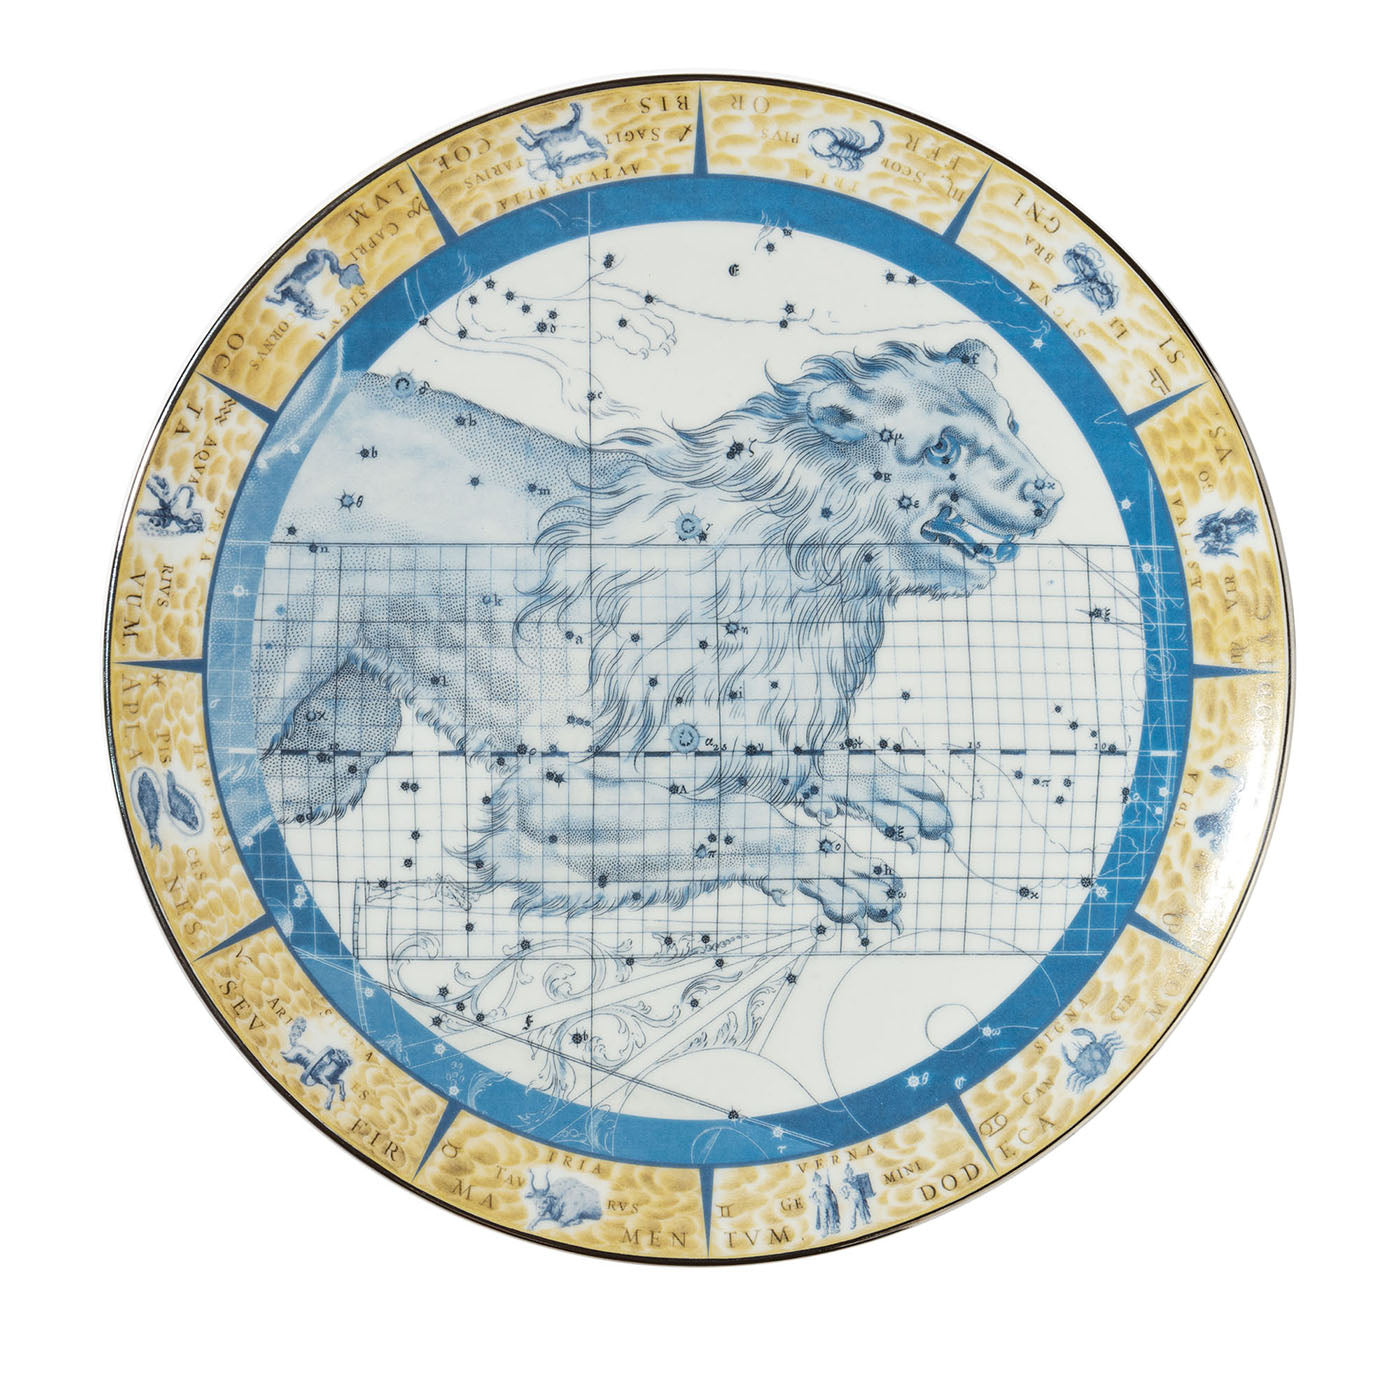 Zodiacus Leo Decorative Porcelain Plate - Main view